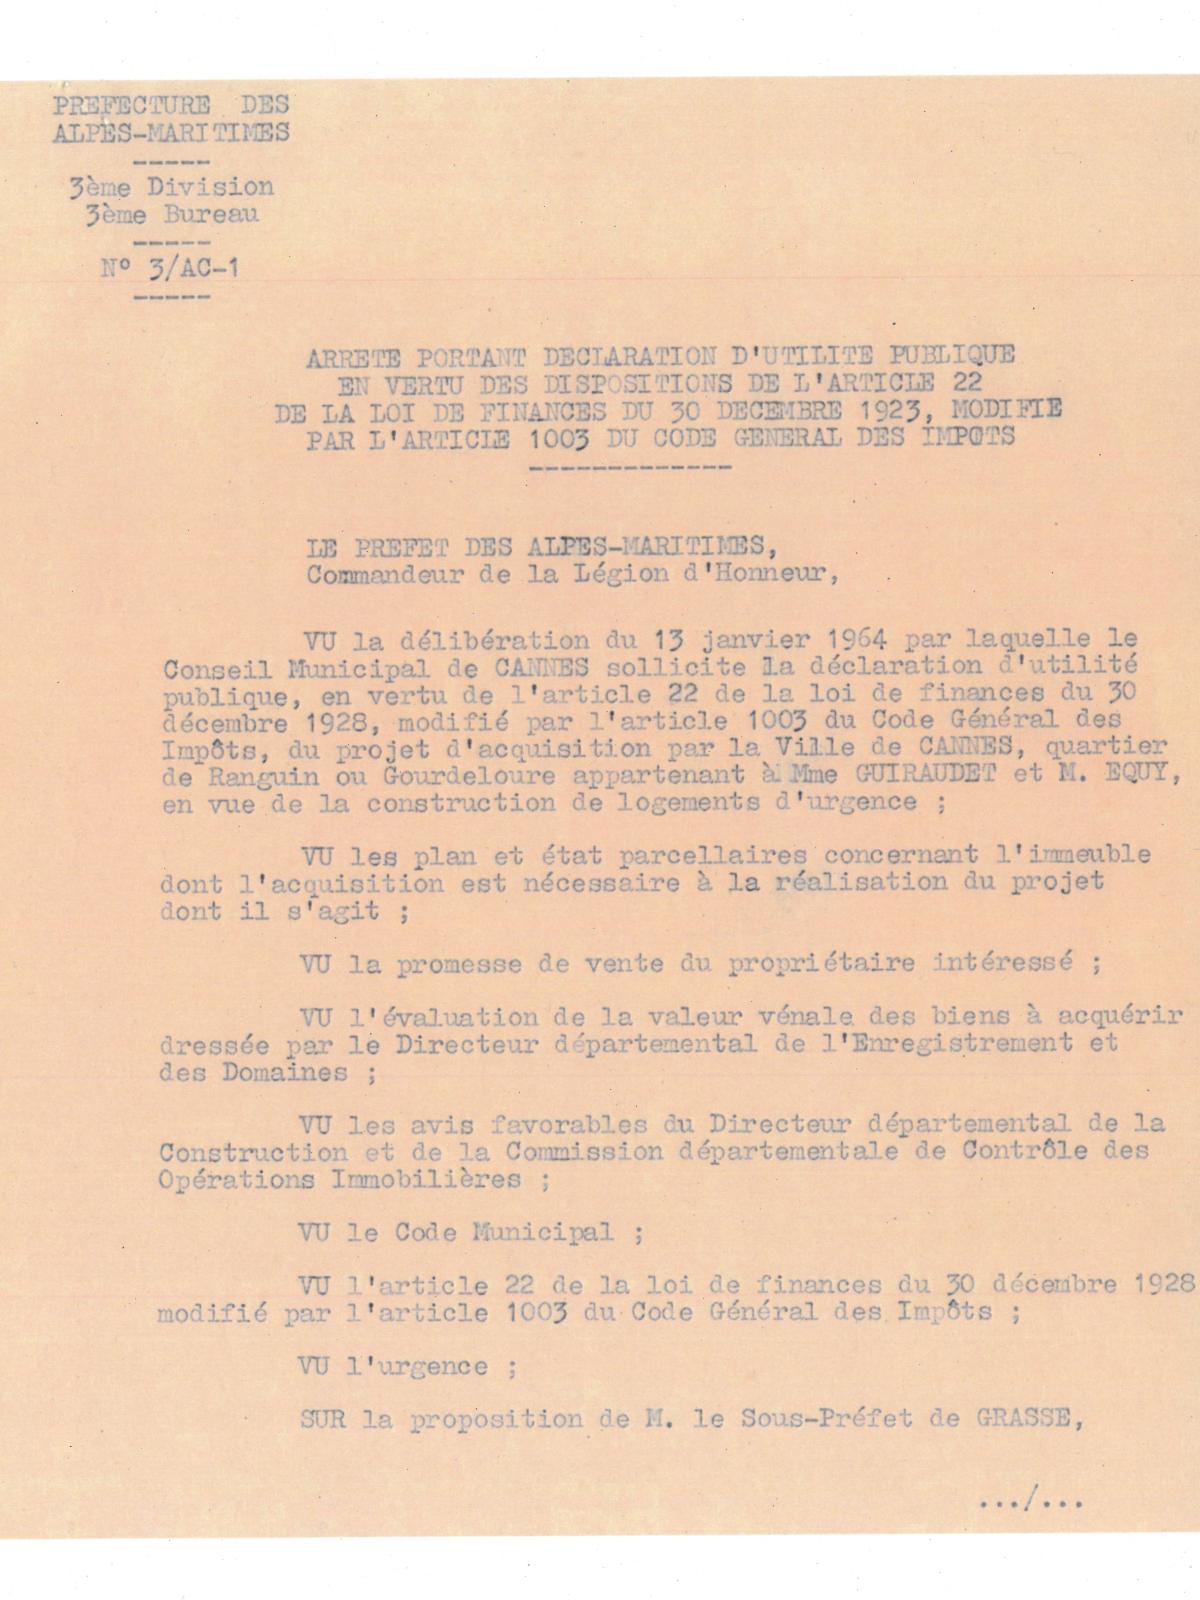 Illustration 2, p. 1 : préfecture des Alpes-Maritimes, arrêté portant déclaration d’utilité publique, 20 juillet 1964 (Archives de Cannes, 22W238)